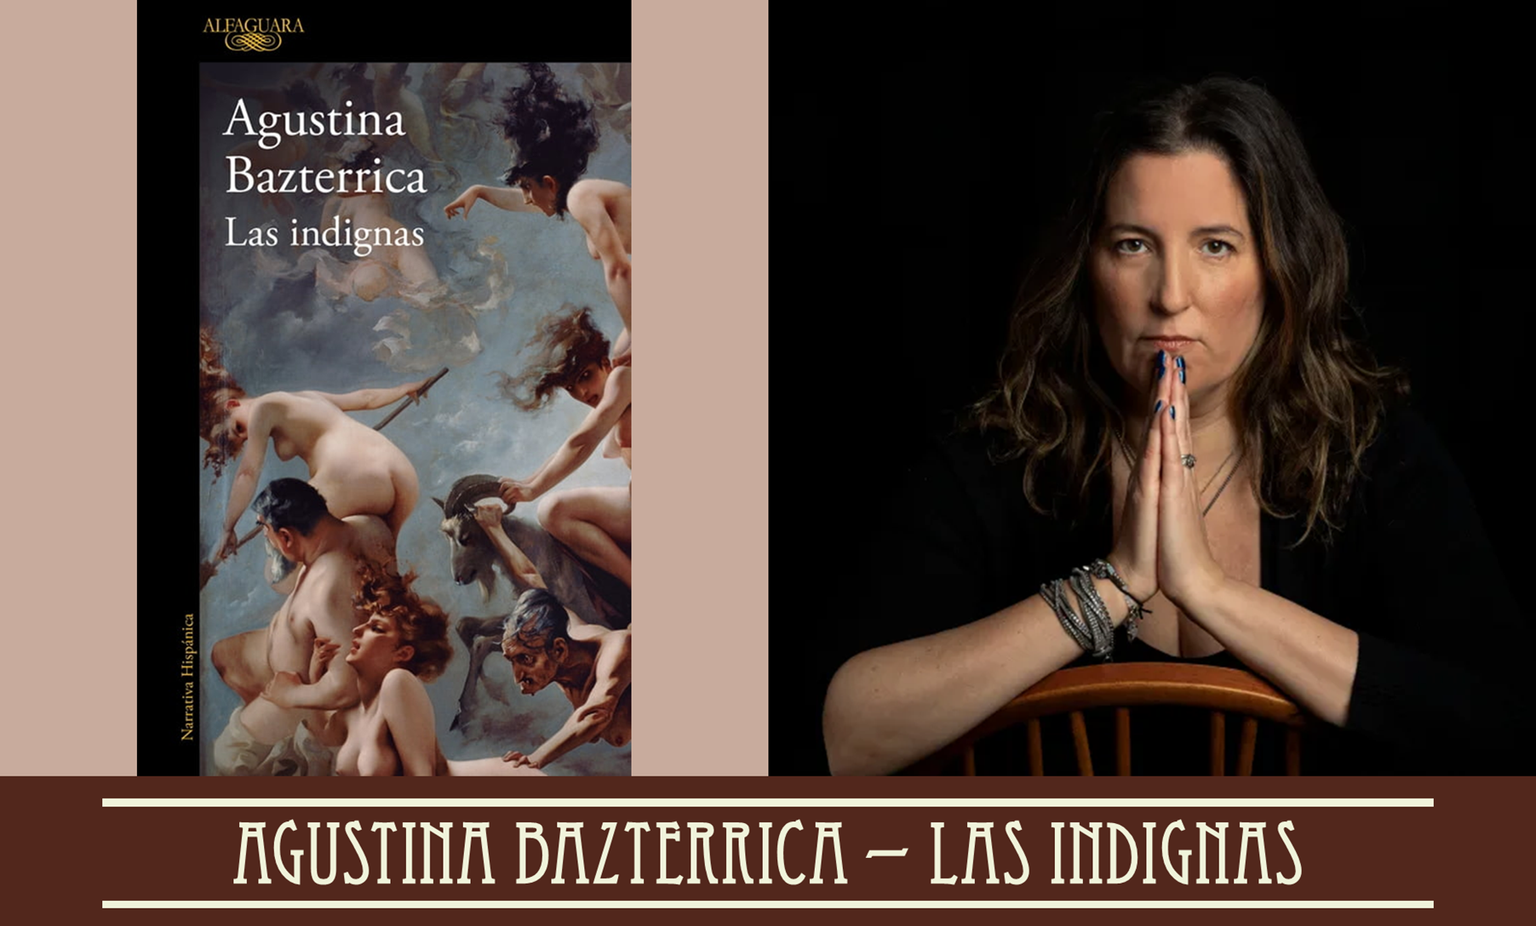 Las indignas', la brutal novela de Agustina Bazterrica que